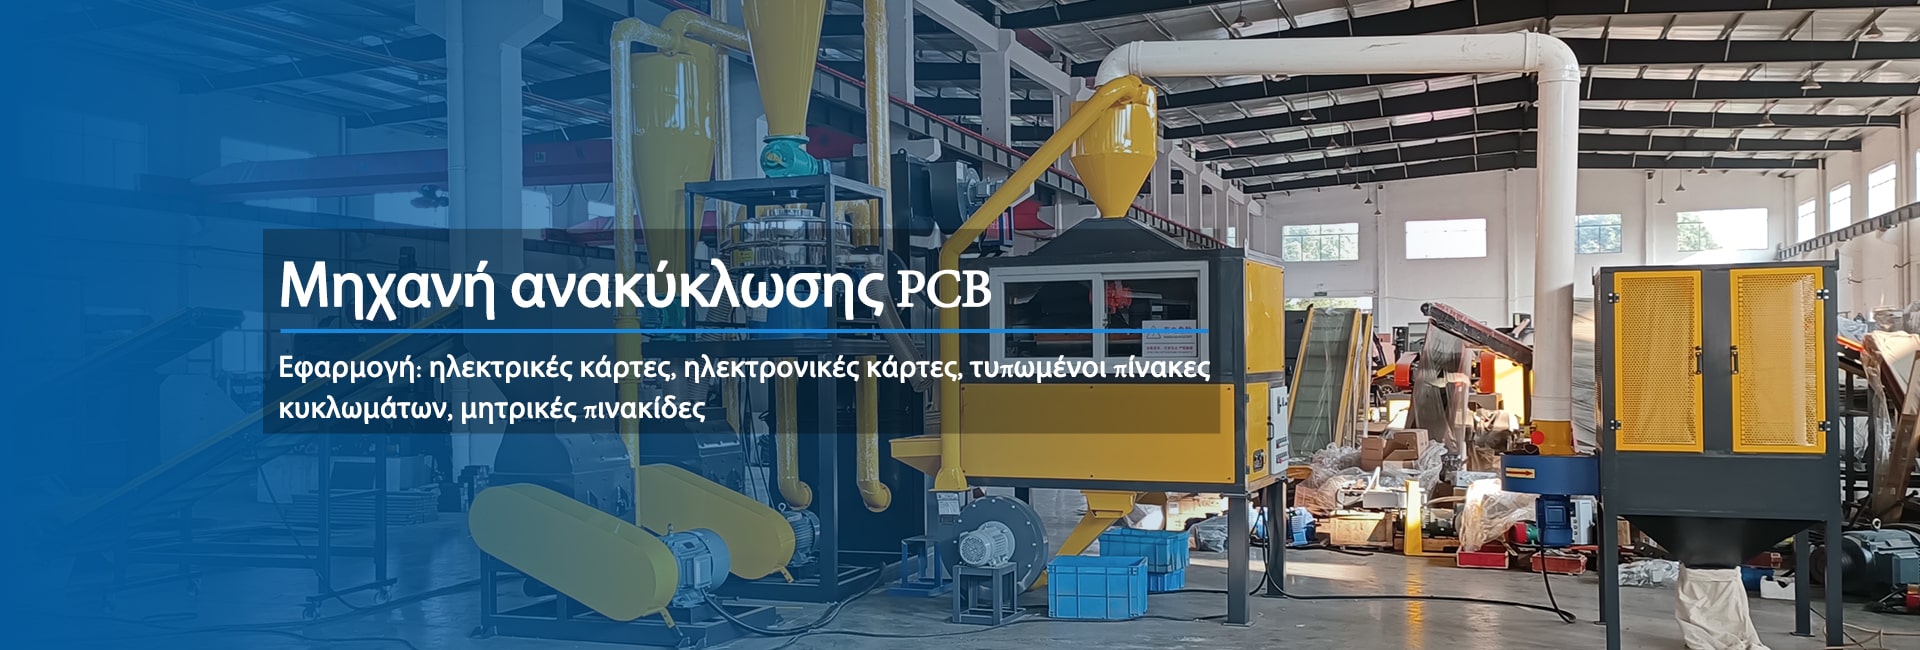 Έχουμε αναπτύξει μια σειρά από συμπαγείς μηχανές (PCB Compact) και γραμμές ανακύκλωσης (PCB LINE) που είναι εύκολες στη χρήση και τη συντήρηση.